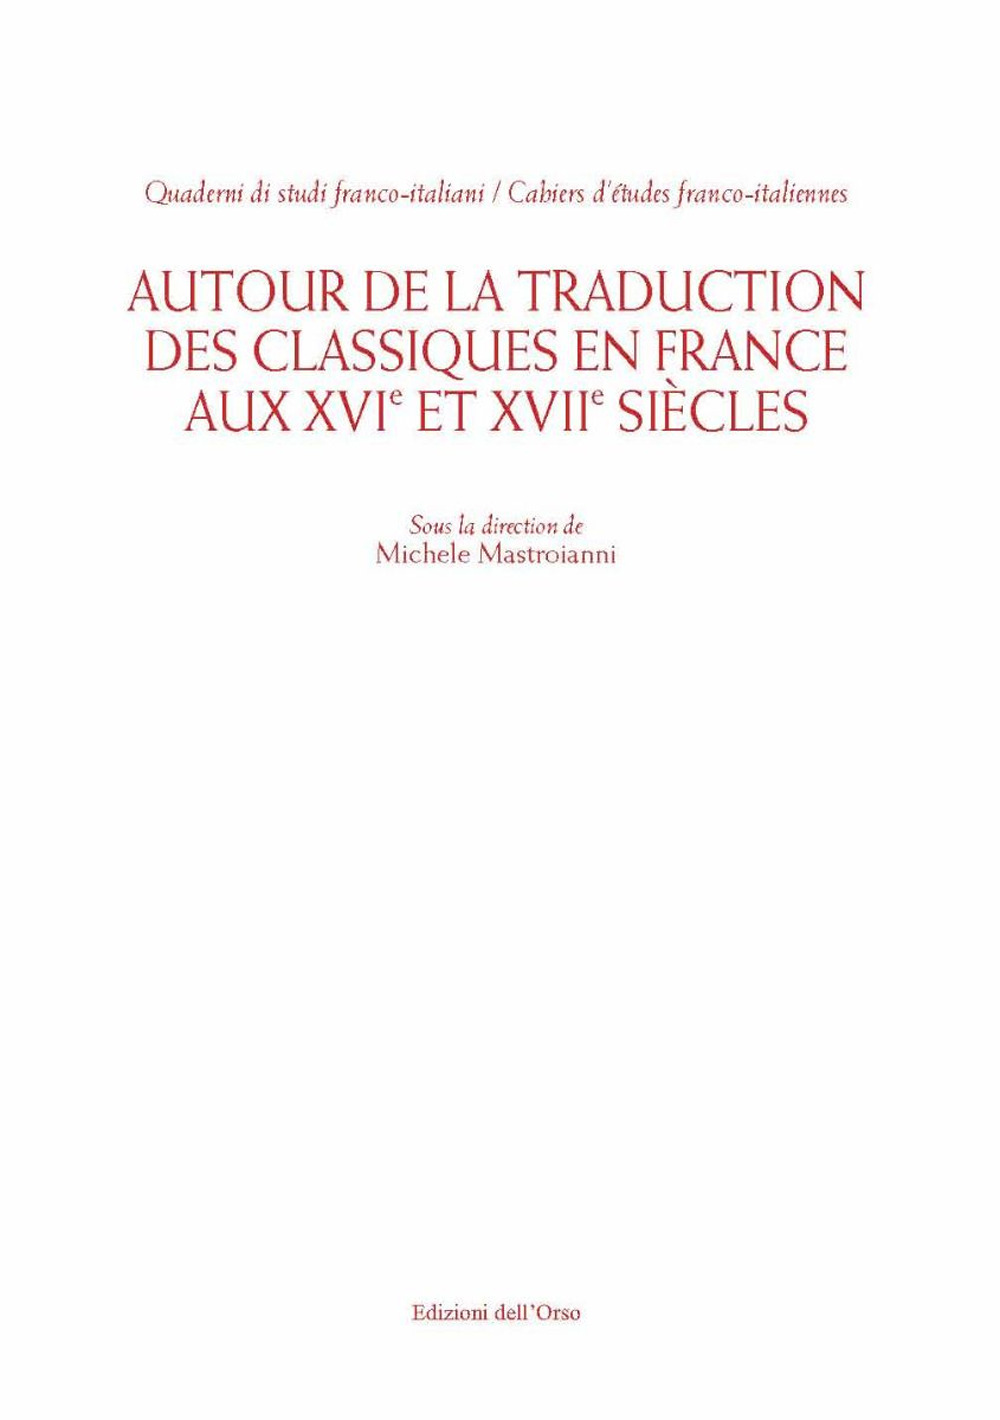 Autour de la traduction des classiques en France aux XVI et XVII siècles